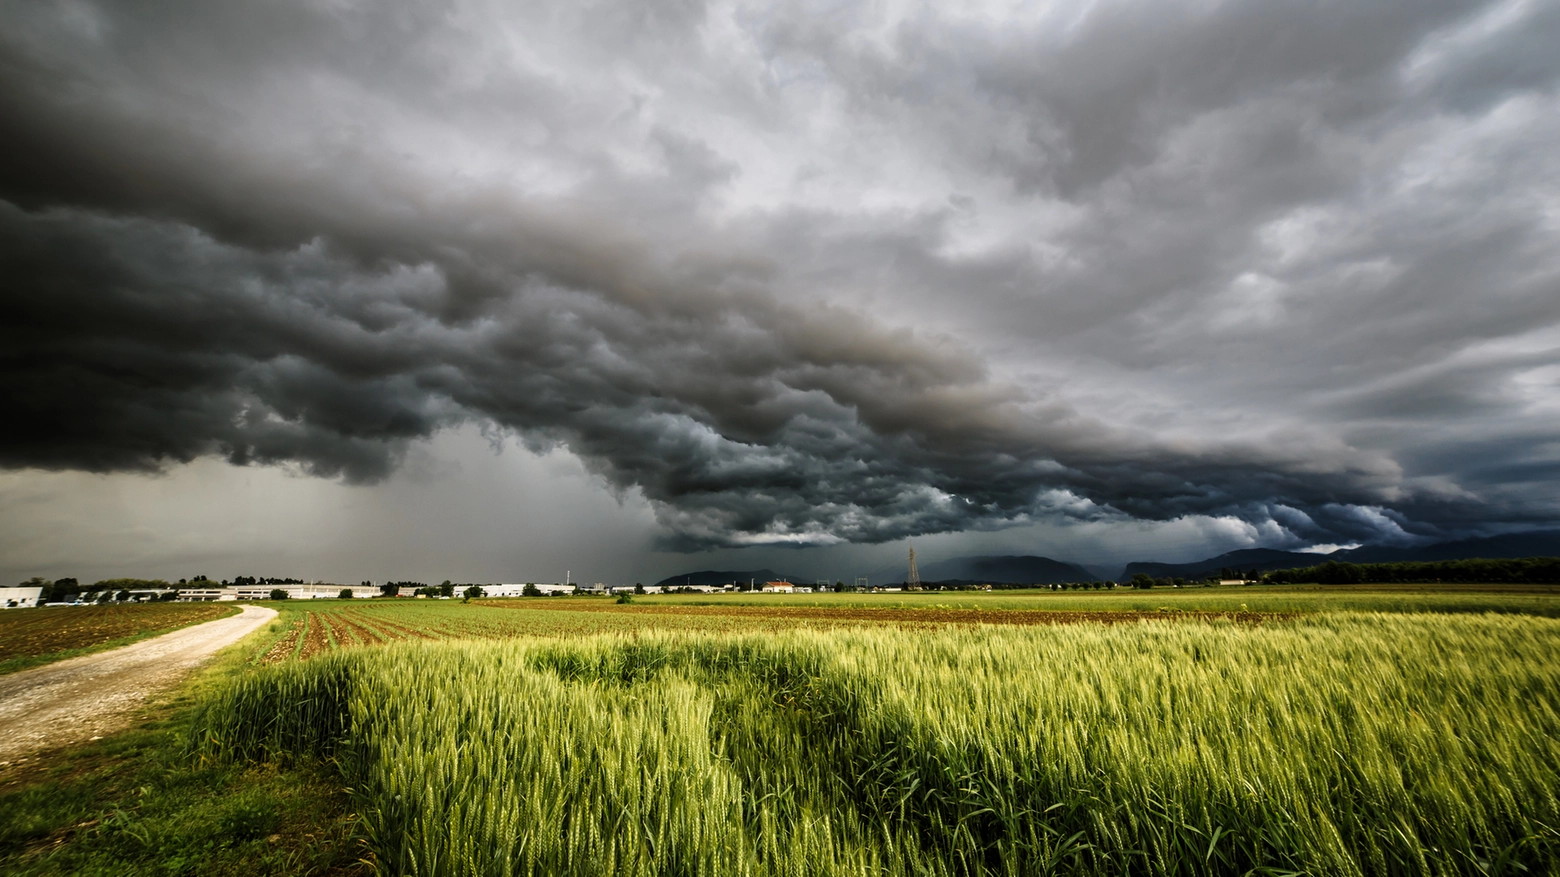 Maltempo in Toscana, emessa allerta meteo gialla per venerdì 12 maggio in tutta la regione